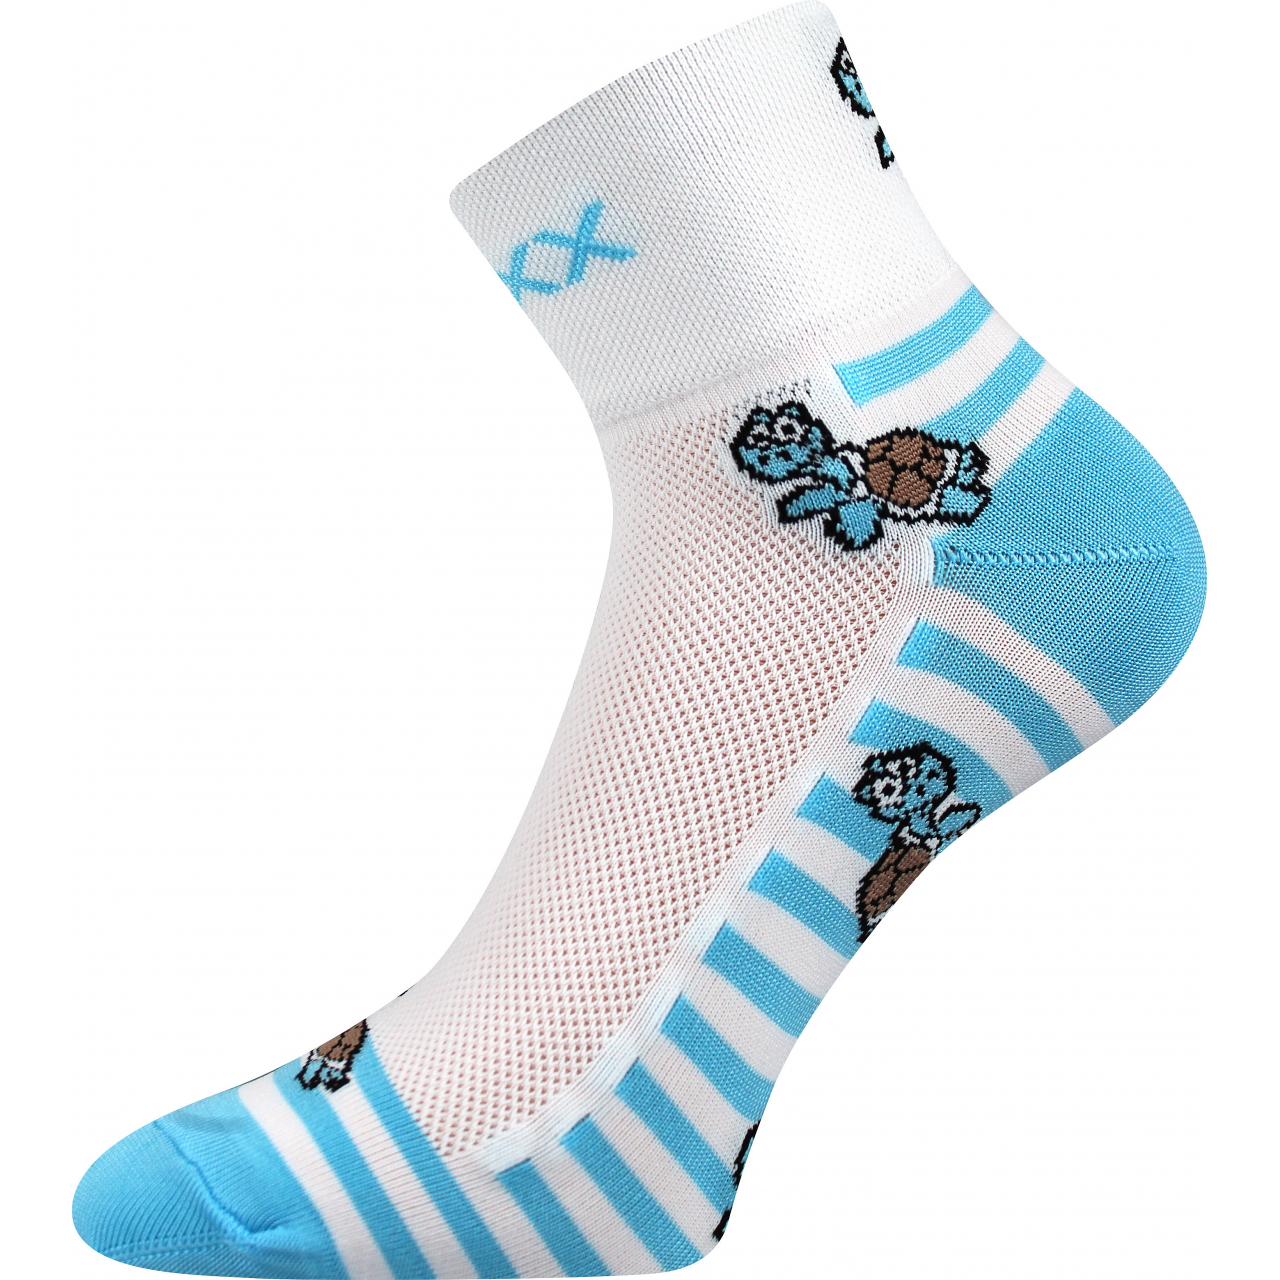 Ponožky sportovní unisex Voxx Ralf X Želvy - bílé-modré, 39-42